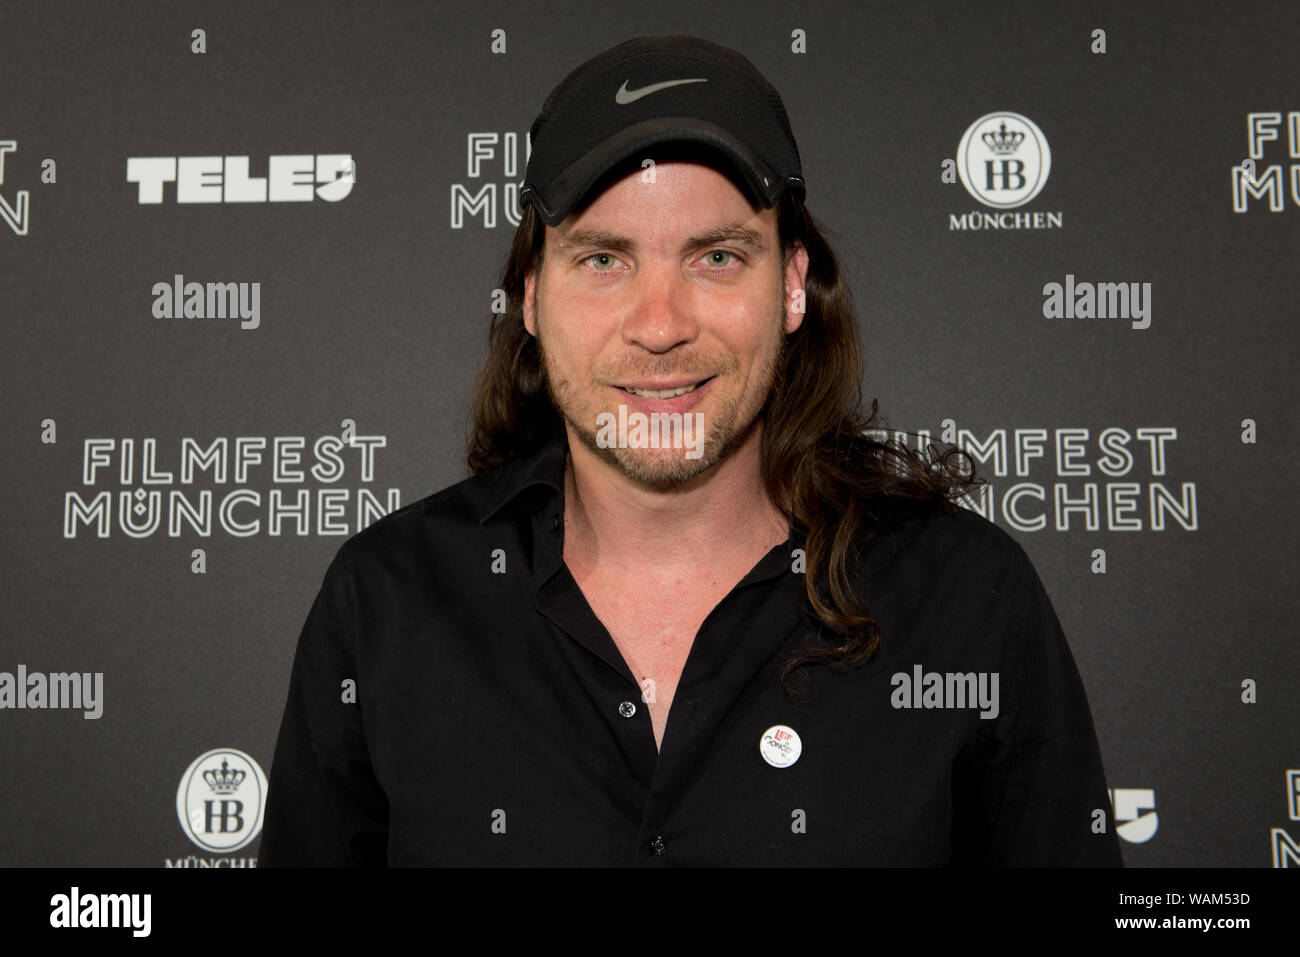 Le réalisateur Christian Klandt avant la projection de son film Leif en concert au Filmfest München 2019 Banque D'Images